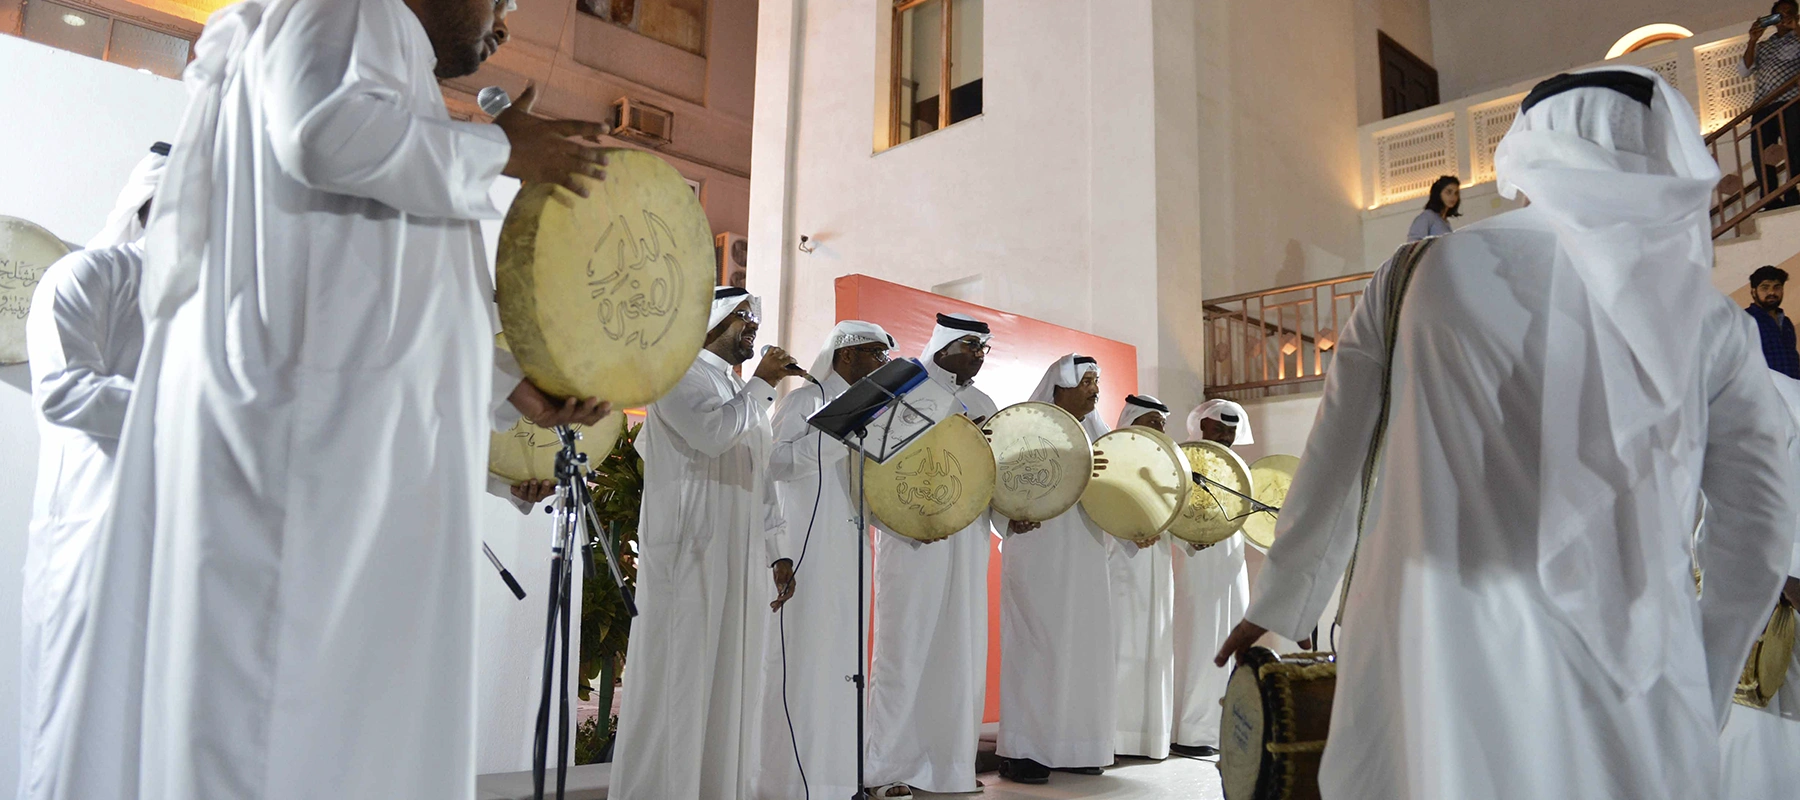 Featured image for “اكتشف التنوع الموسيقي الثقافي في البحرين”